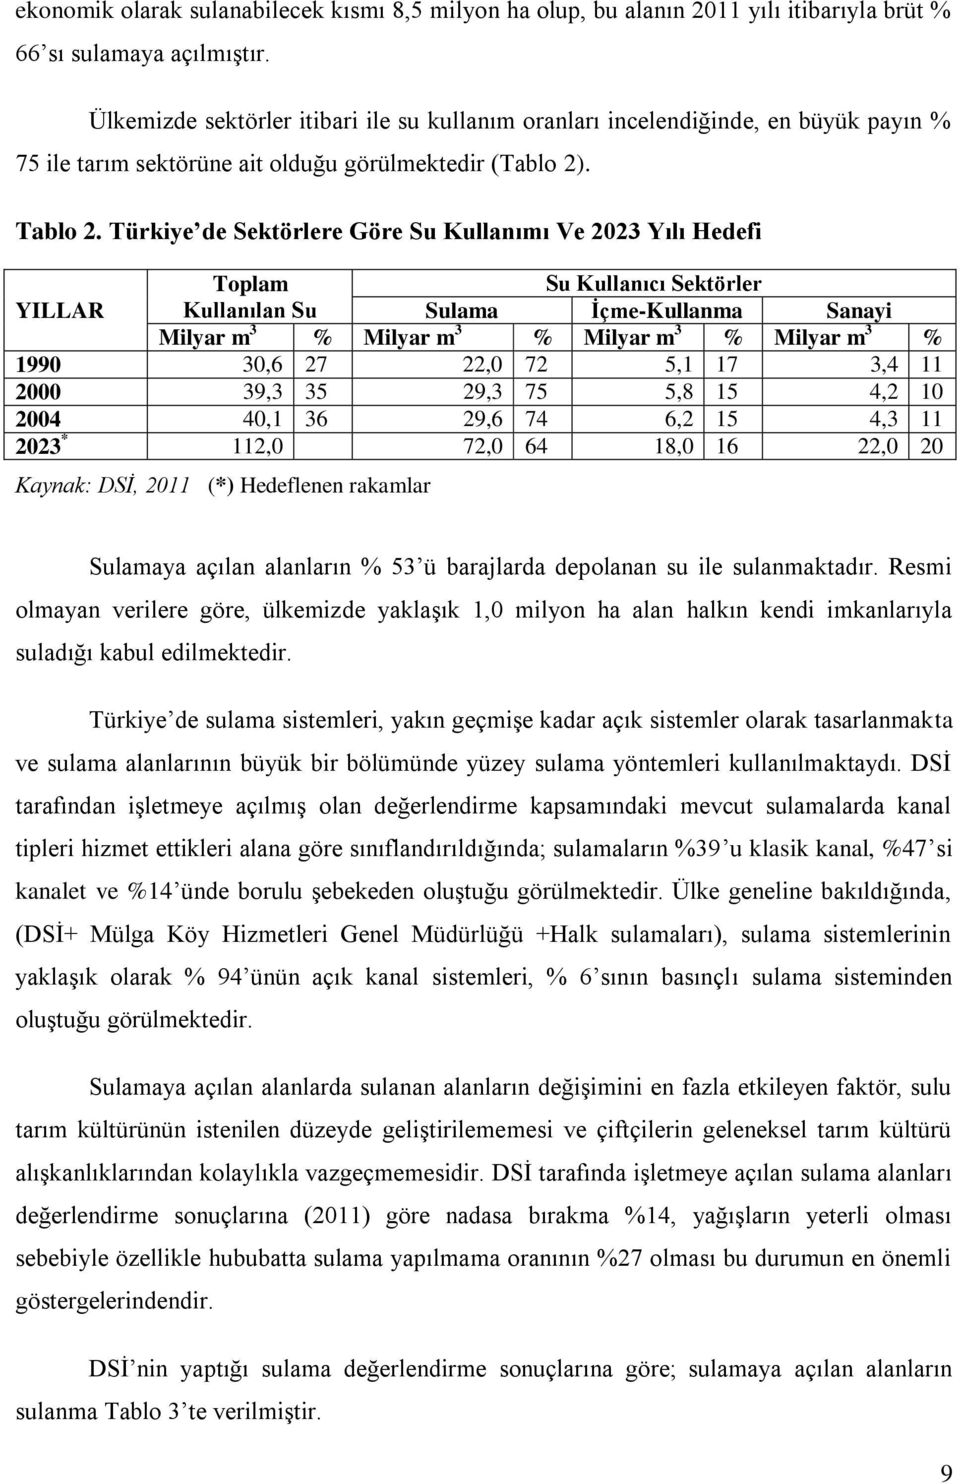 Türkiye de Sektörlere Göre Su Kullanımı Ve 2023 Yılı Hedefi Toplam Su Kullanıcı Sektörler YILLAR Kullanılan Su Sulama İçme-Kullanma Sanayi Milyar m 3 % Milyar m 3 % Milyar m 3 % Milyar m 3 % 1990